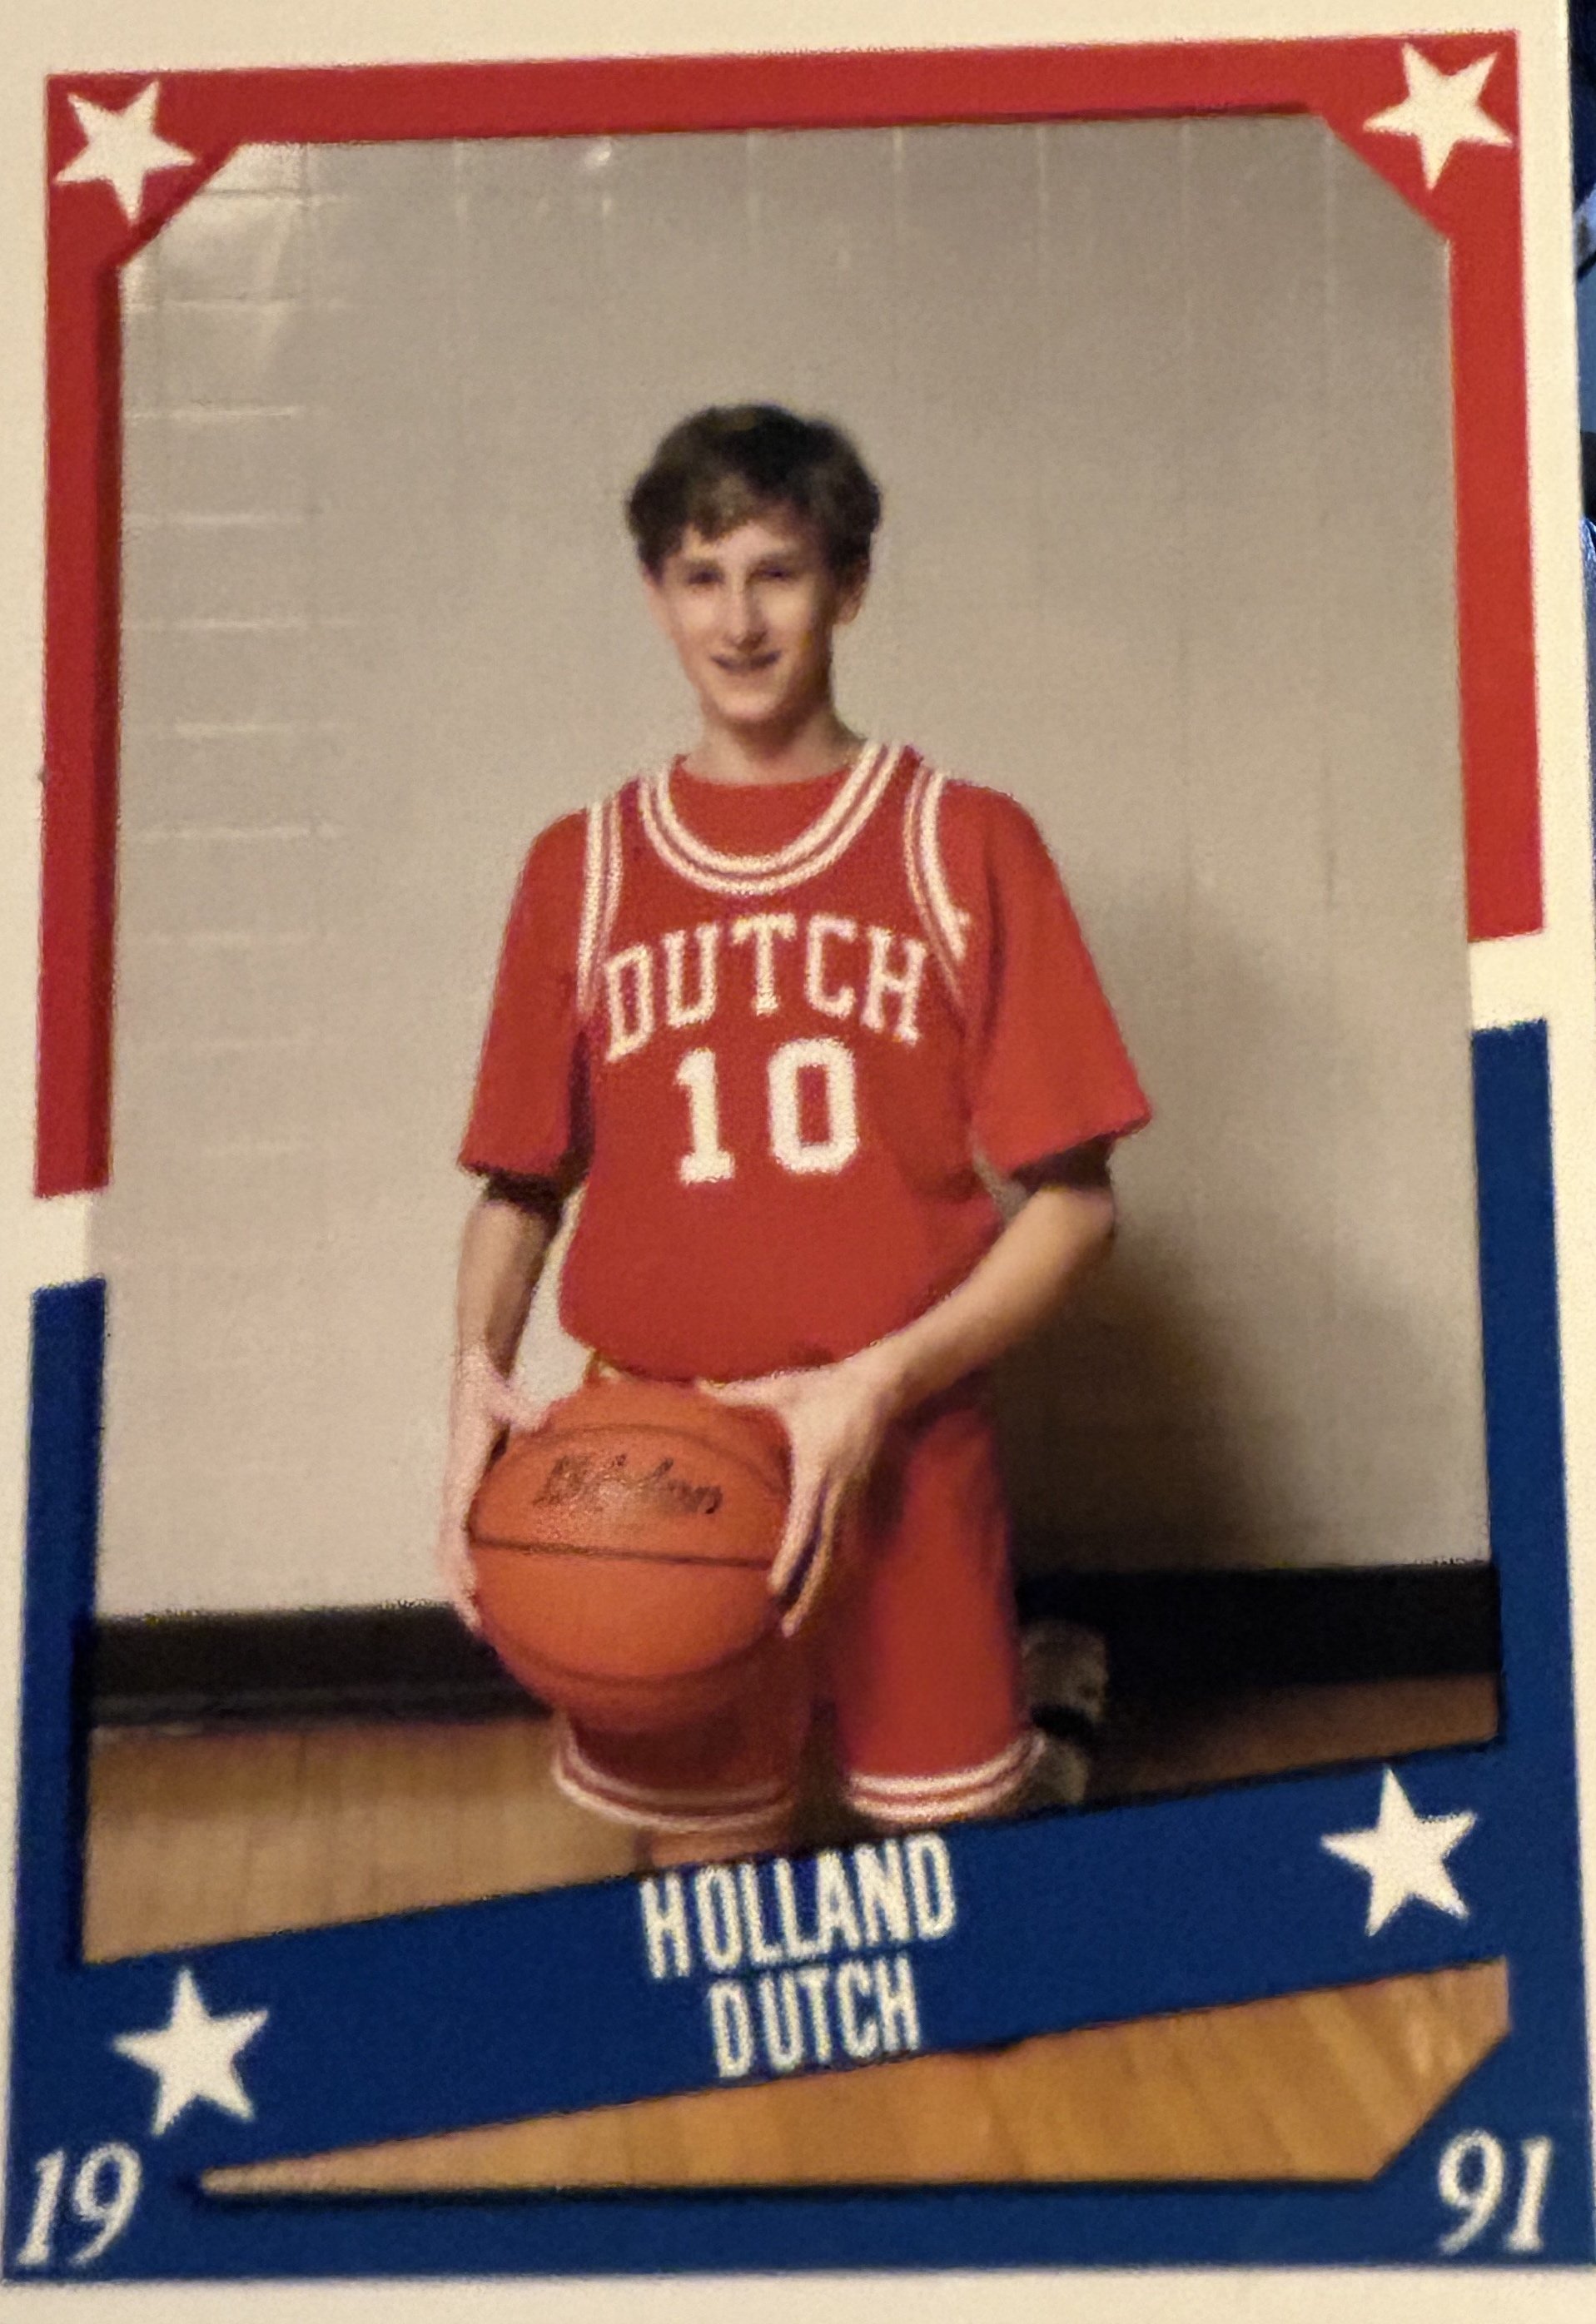 Holland Dutch. Age 14.